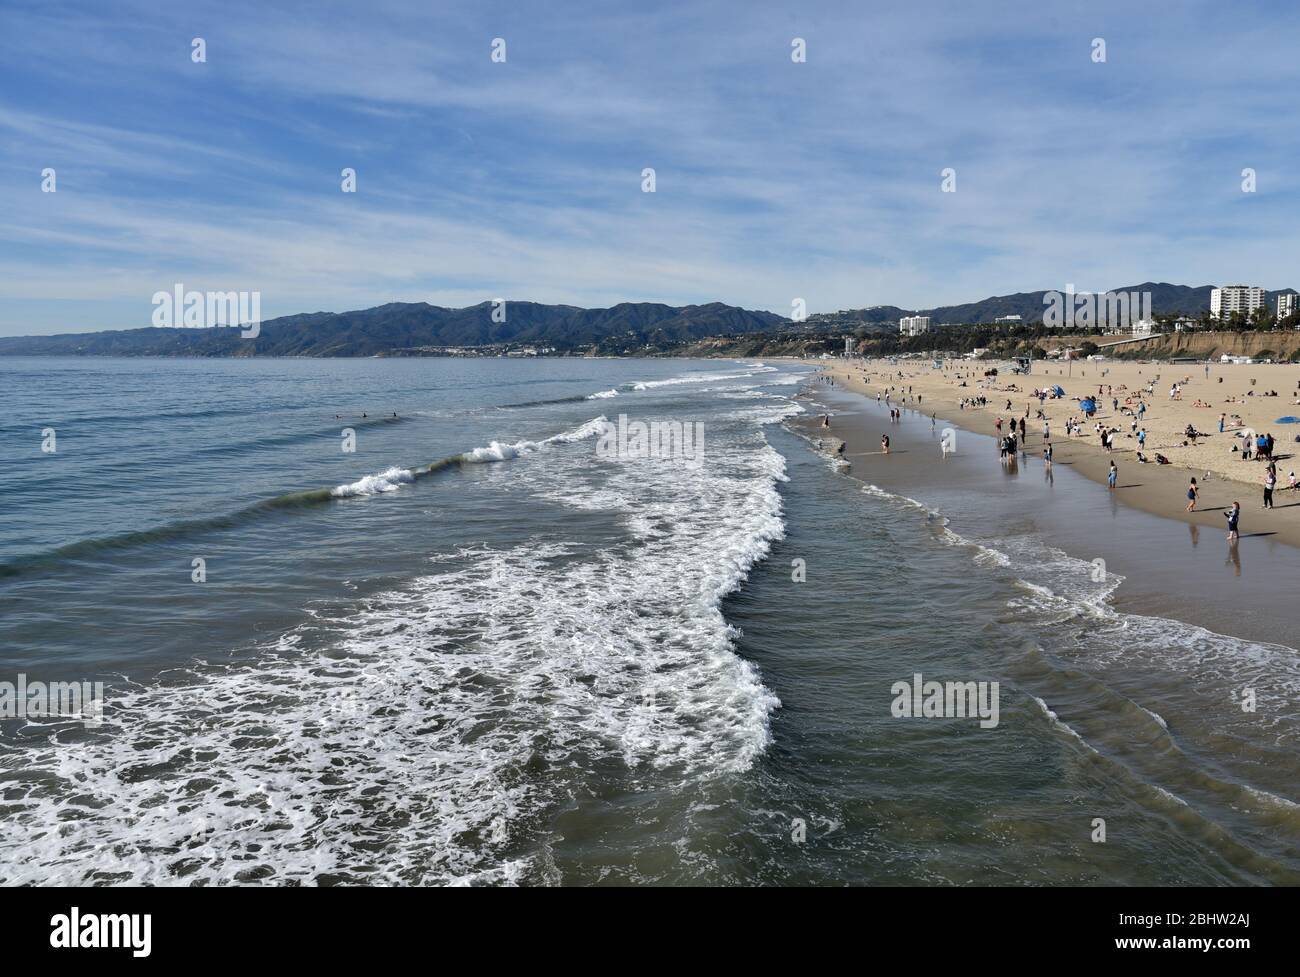 La magnifique baie de Santa Monica et les montagnes sur la plage Banque D'Images